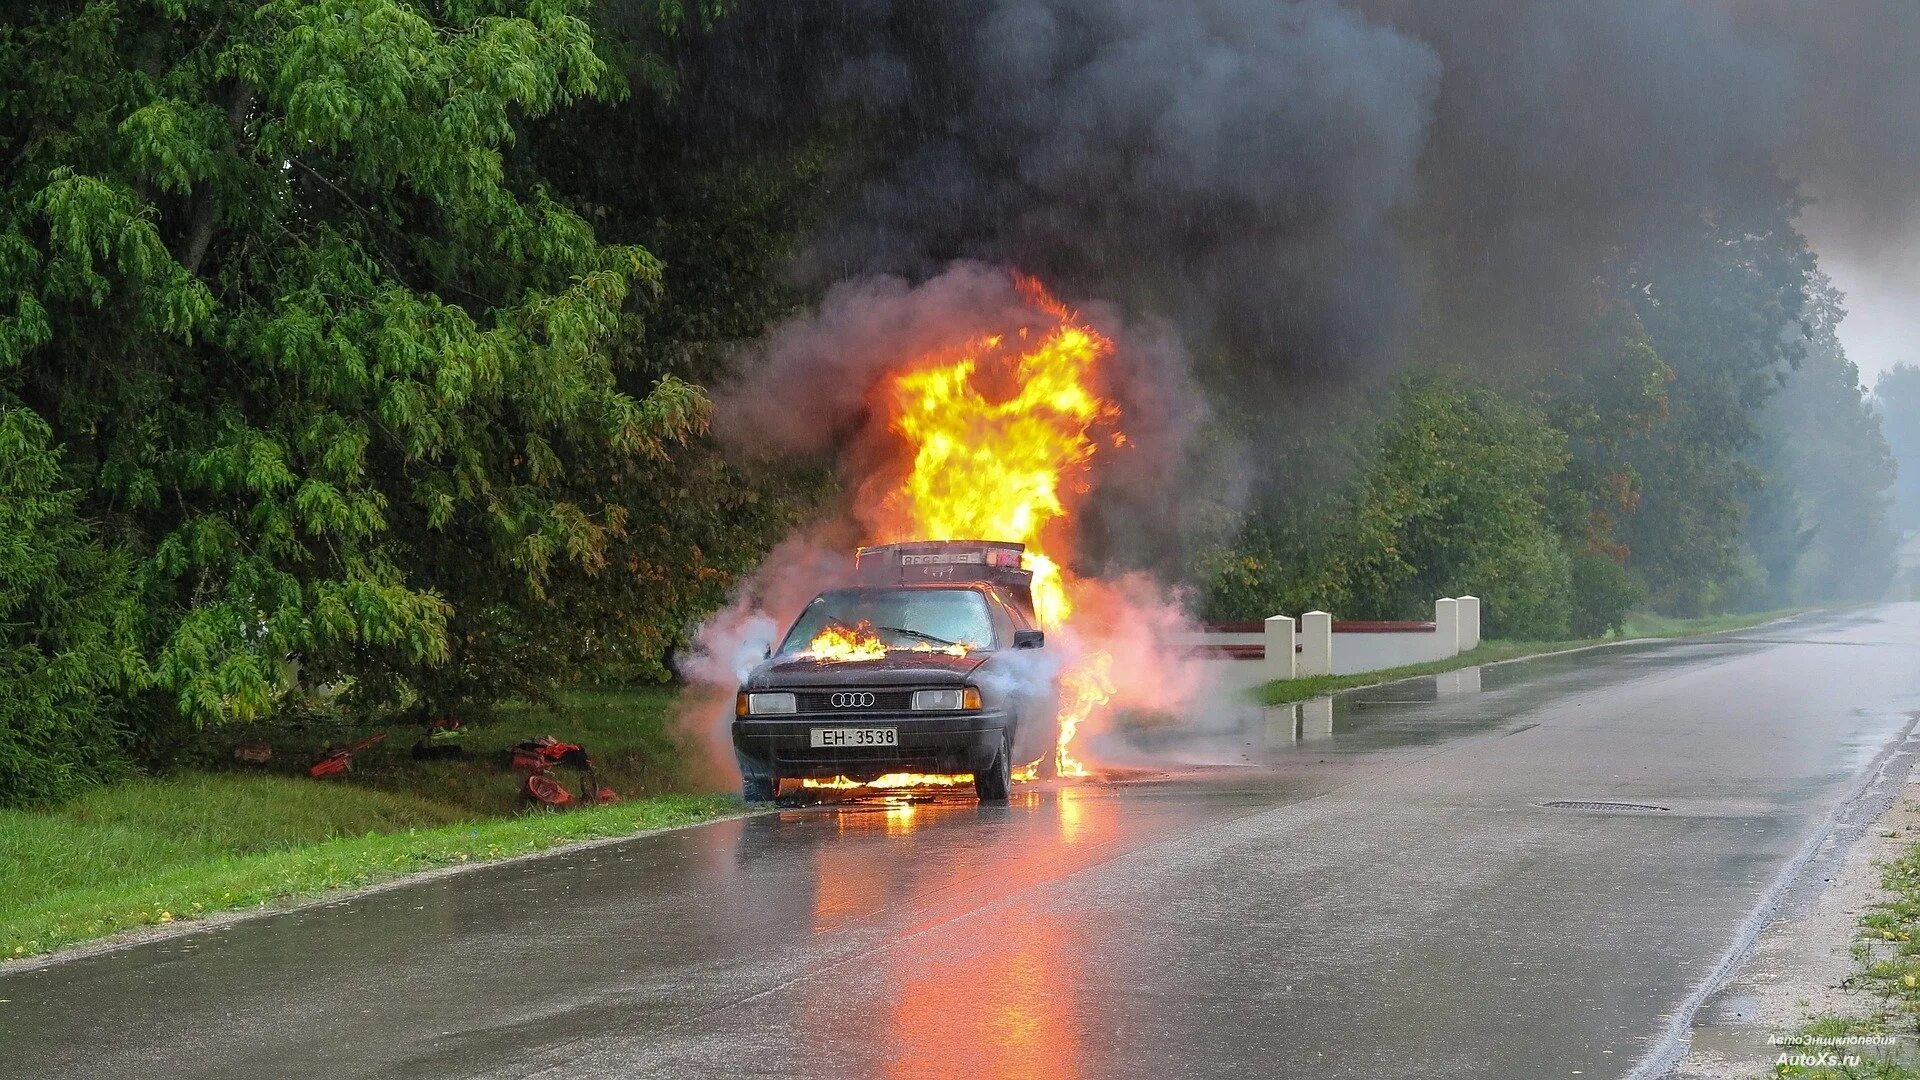 Дорожно транспортное происшествие с огнем. Пожары на транспортных средствах. Загорелся двигатель автомобиля